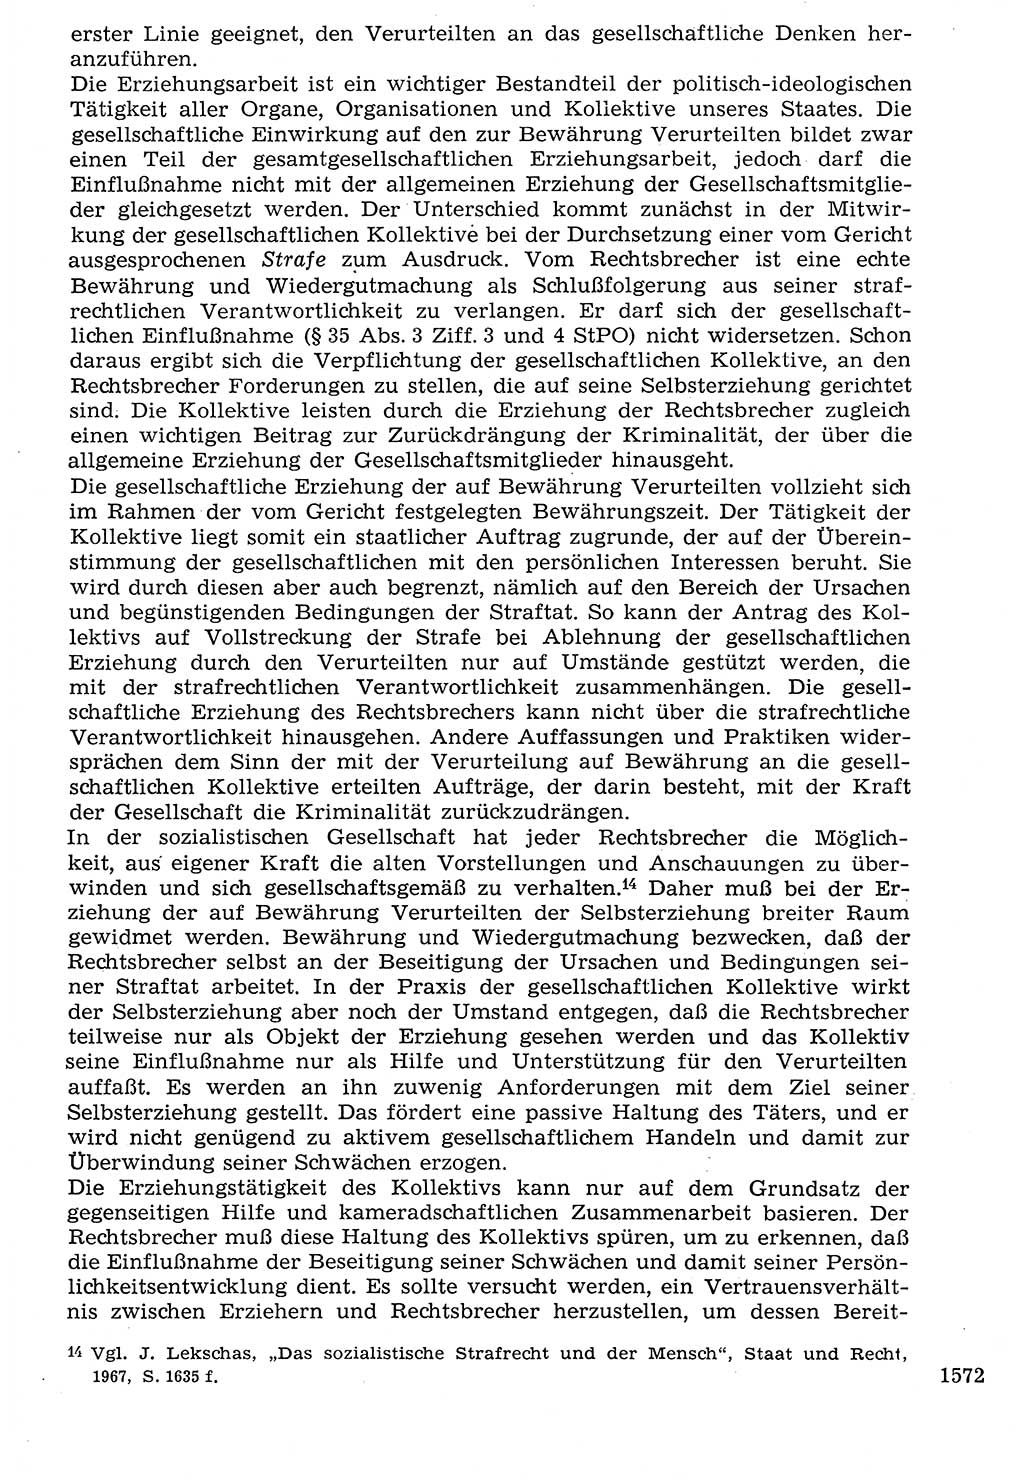 Staat und Recht (StuR), 17. Jahrgang [Deutsche Demokratische Republik (DDR)] 1968, Seite 1572 (StuR DDR 1968, S. 1572)